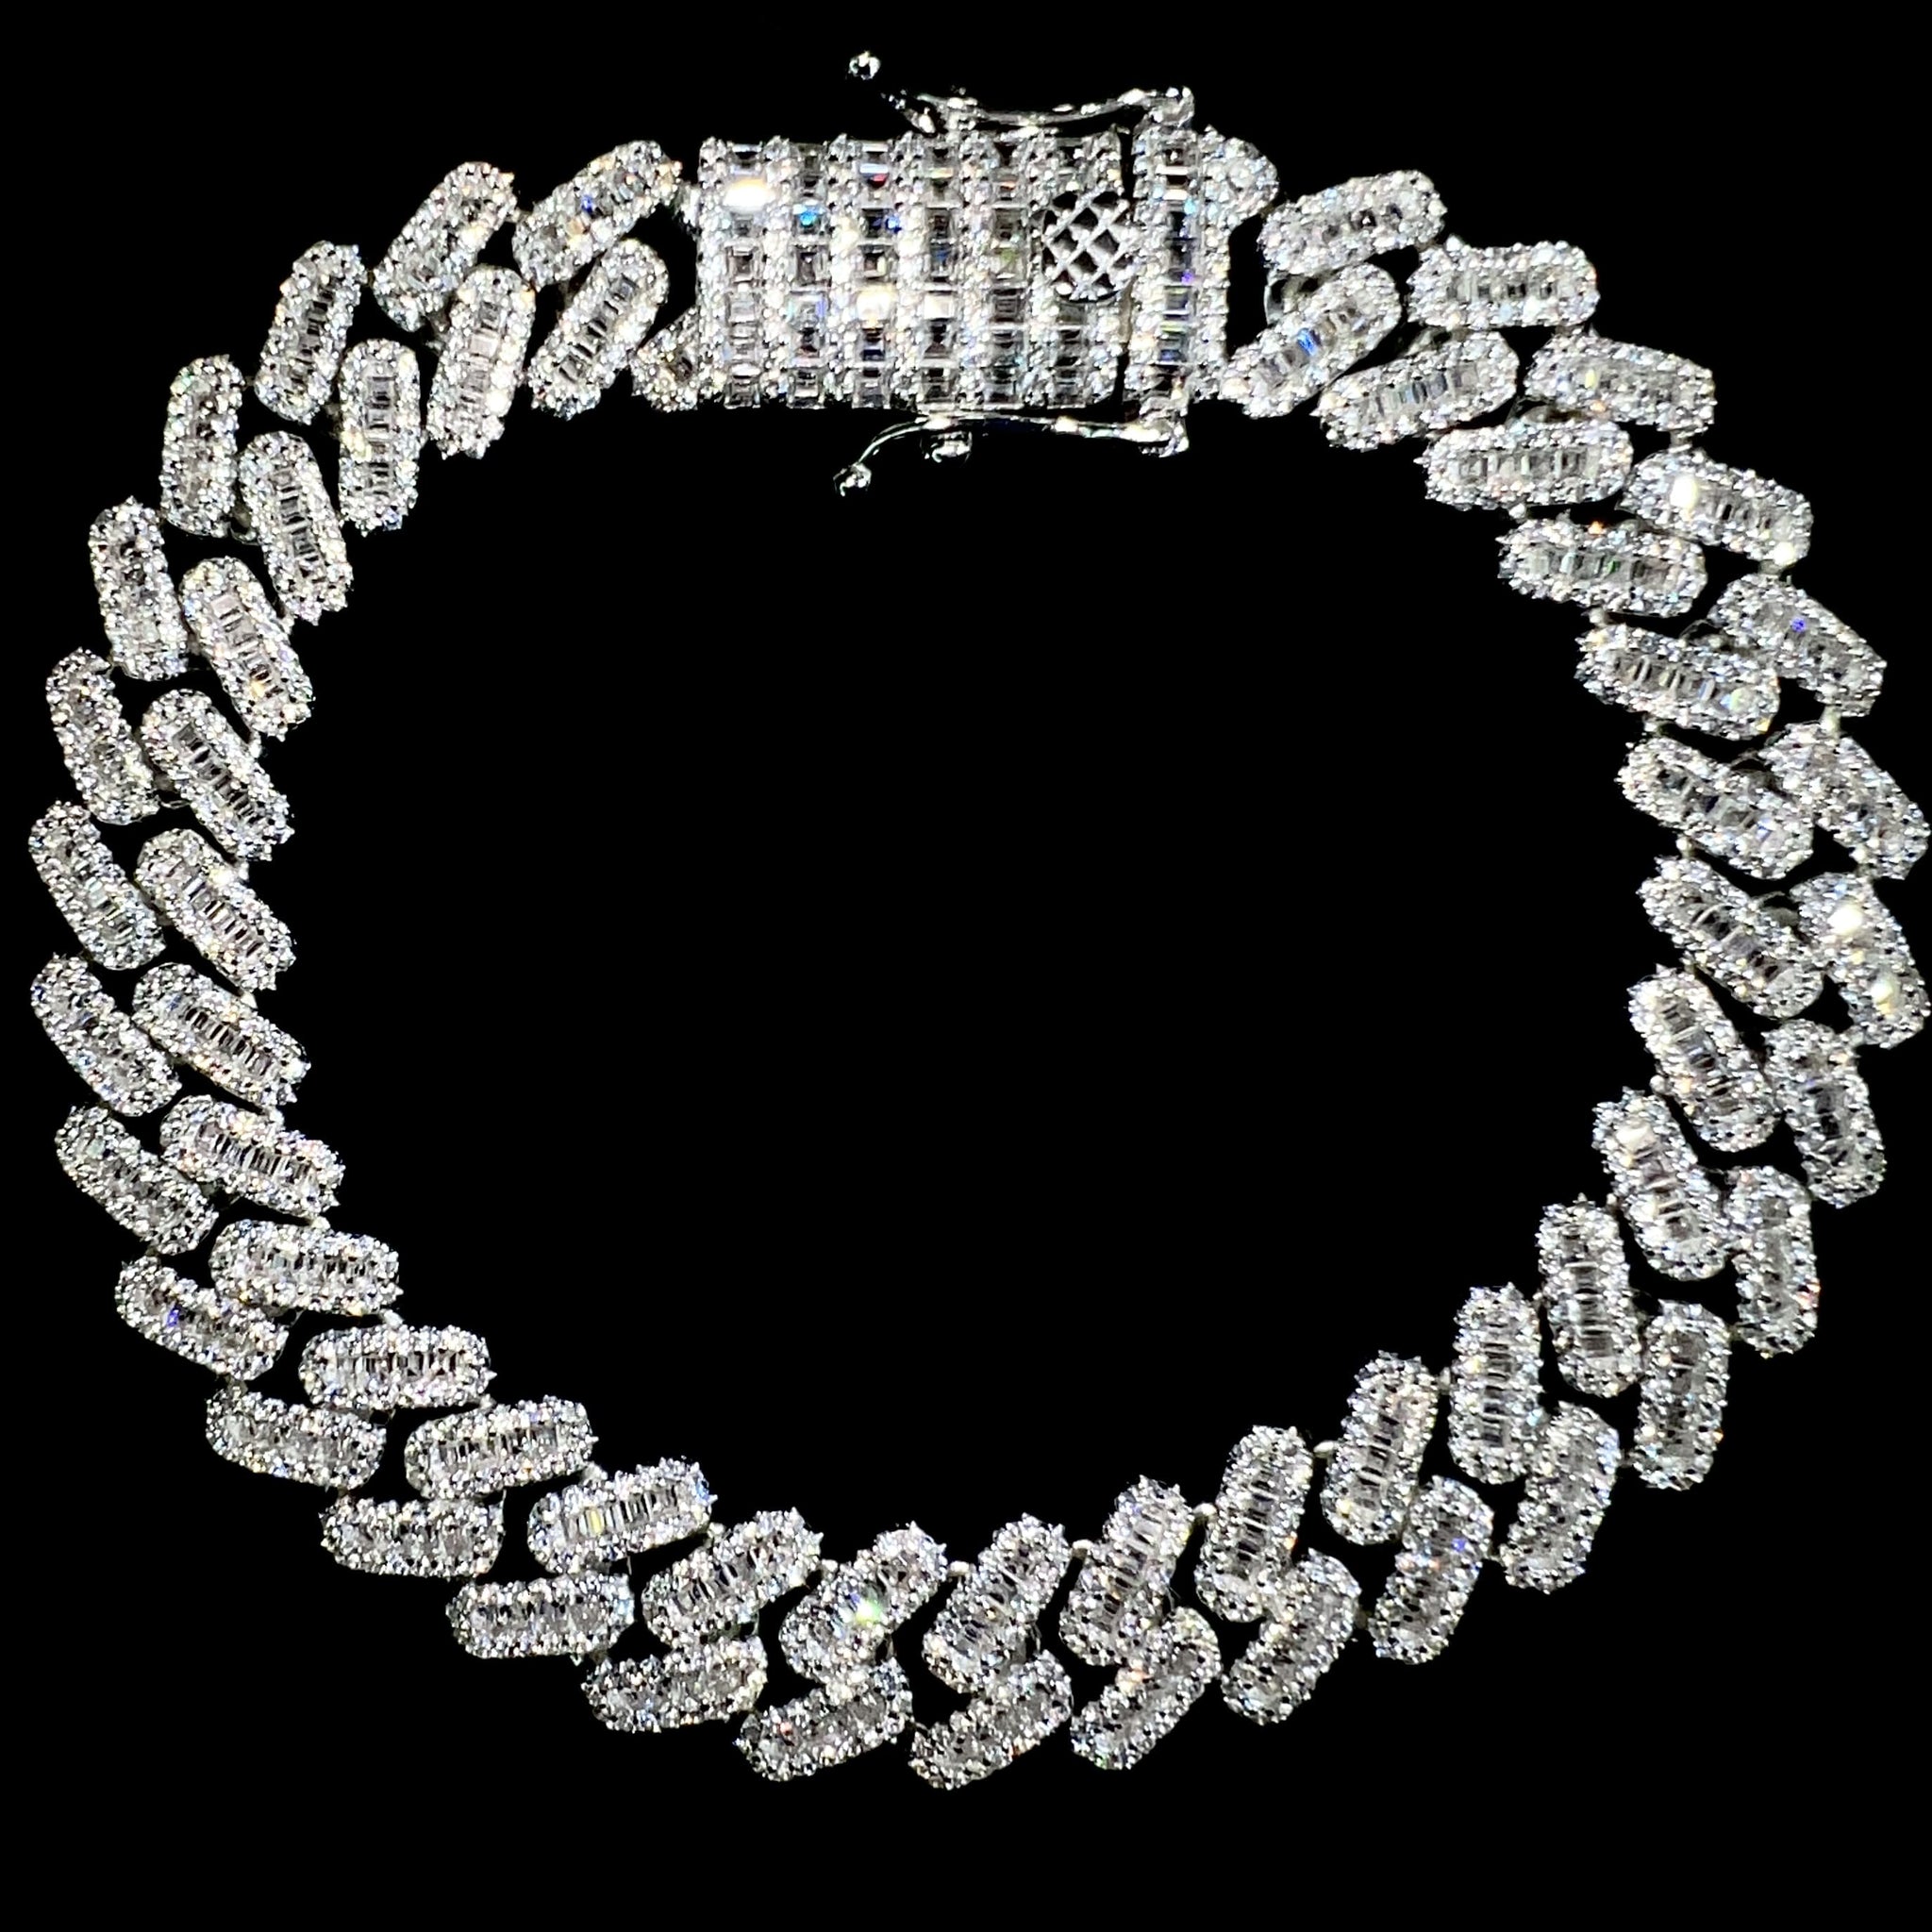 Baguette Cuban Prong Link Bracelet - 12mm - Silver 925 - Sehgal Dubai Collection